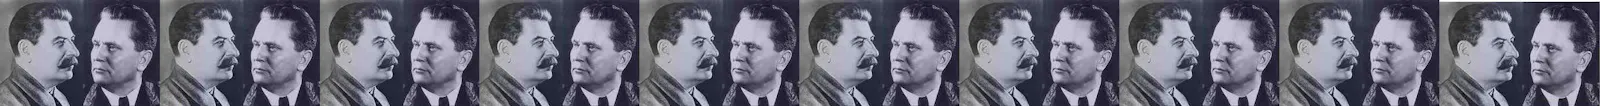 Tito contro Stalin